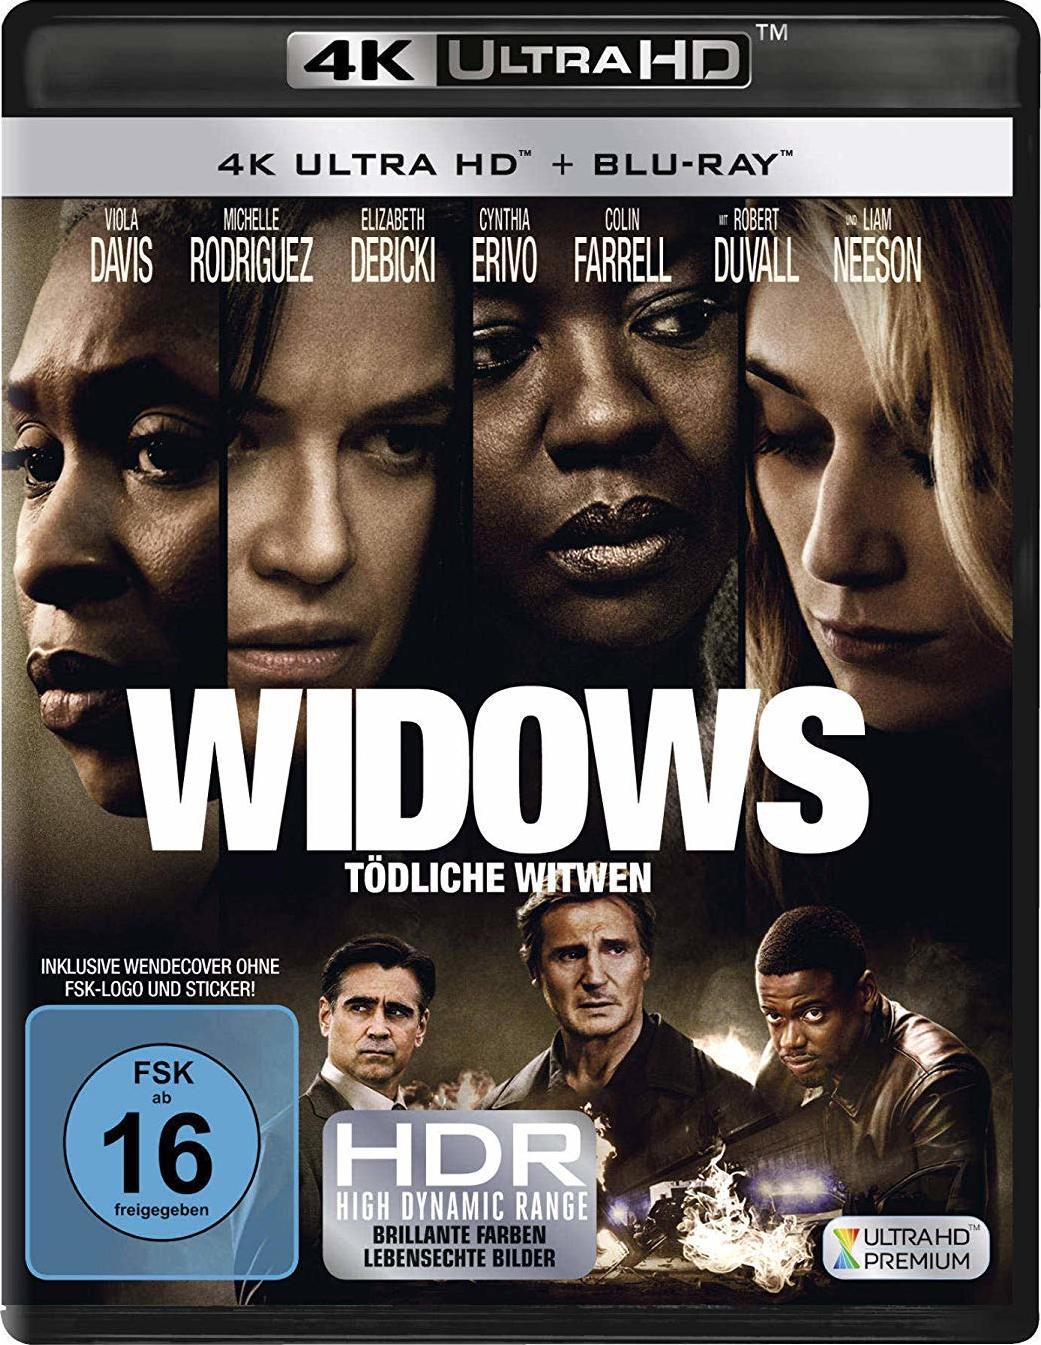 寡妇联盟 / 寡妇(台) / 寡妇劫案 [DIY简繁英双语字幕] Widows 2018 UHD BluRay 2160p HEVC TrueHD Atmos 7.1-AA@OurBits    [58.35 GB]-1.jpg